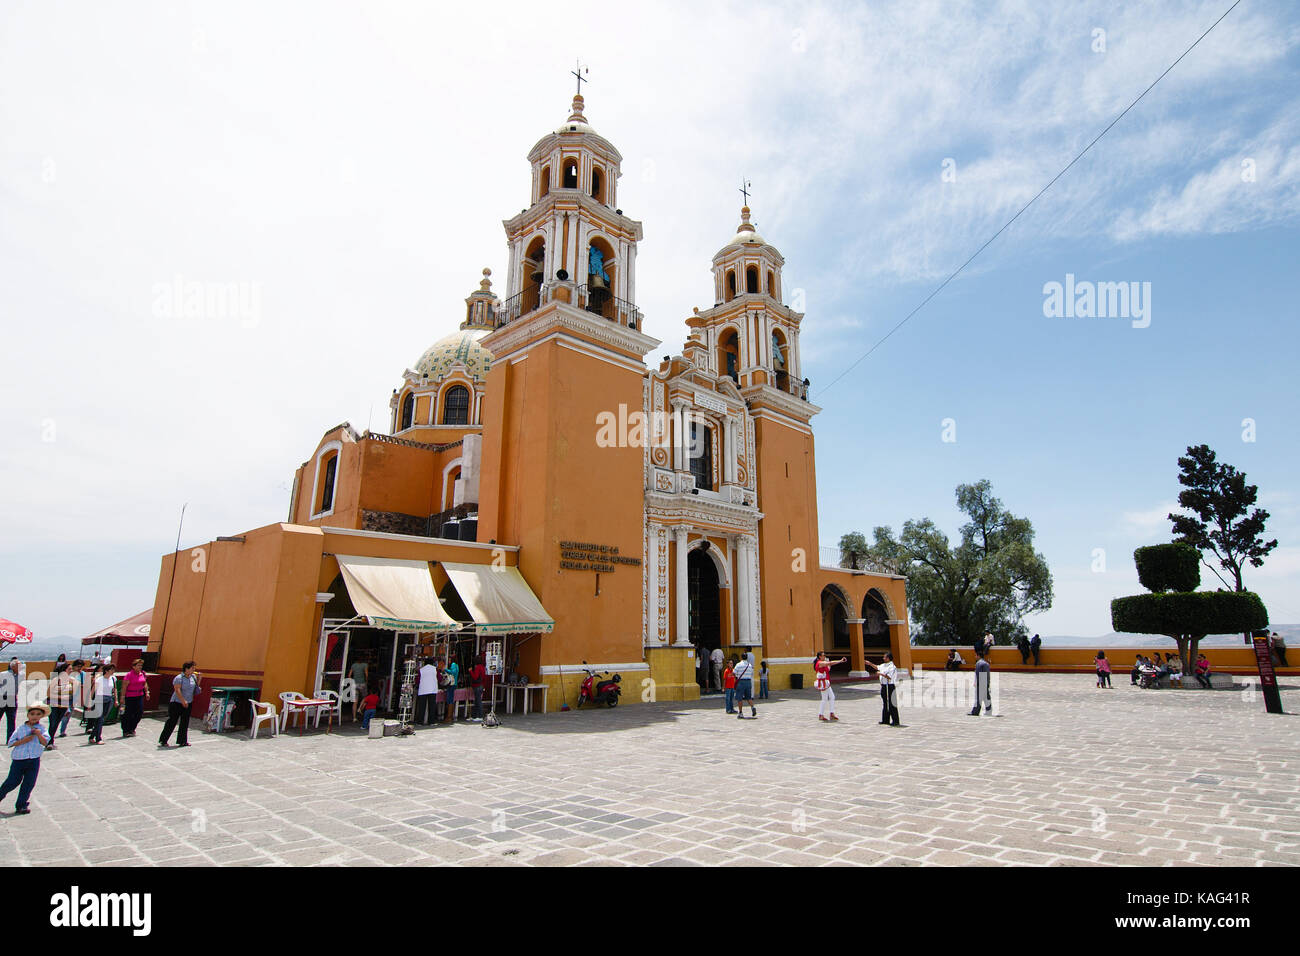 Cholula, Puebla, México - 2016: Iglesia nuestra Señora de los Remedios, construida sobre la Gran Pirámide de Cholula. Foto de stock